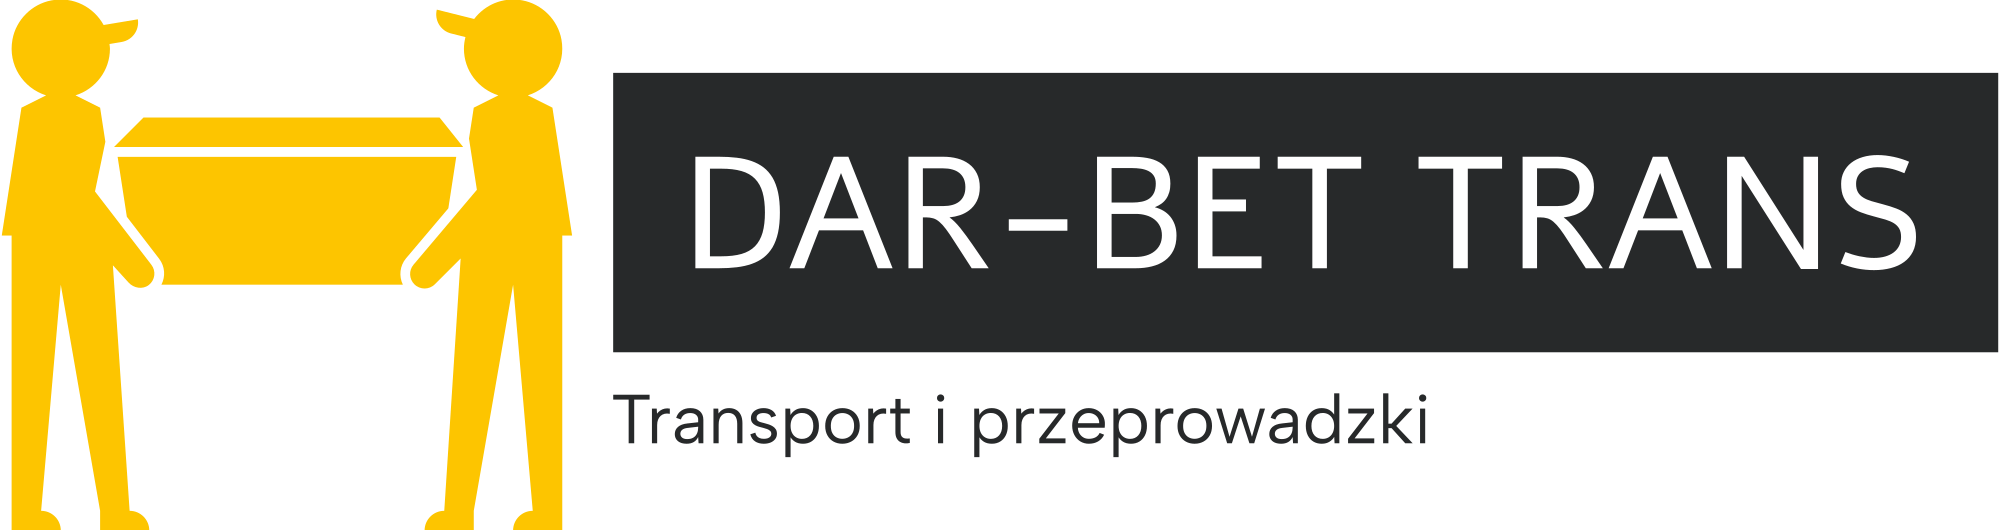 Transport i przeprowadzki DAR-BET TRANS